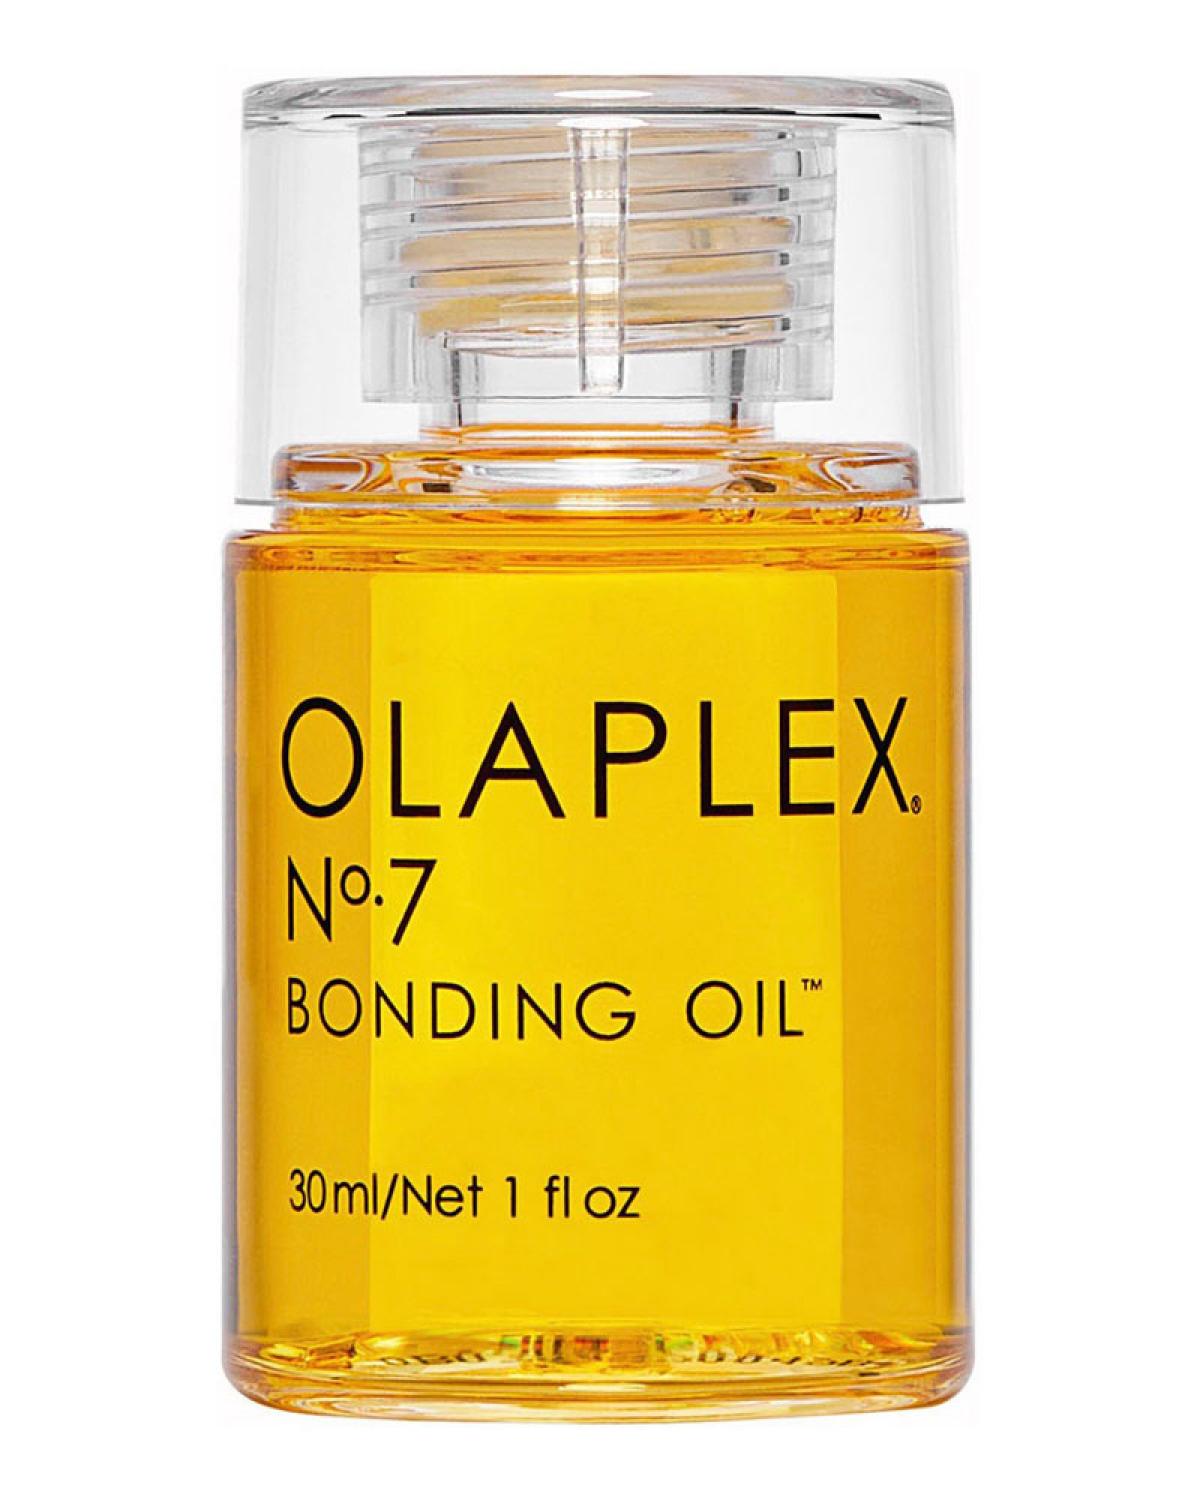 La No. 7 Bonding Oil de Olaplex